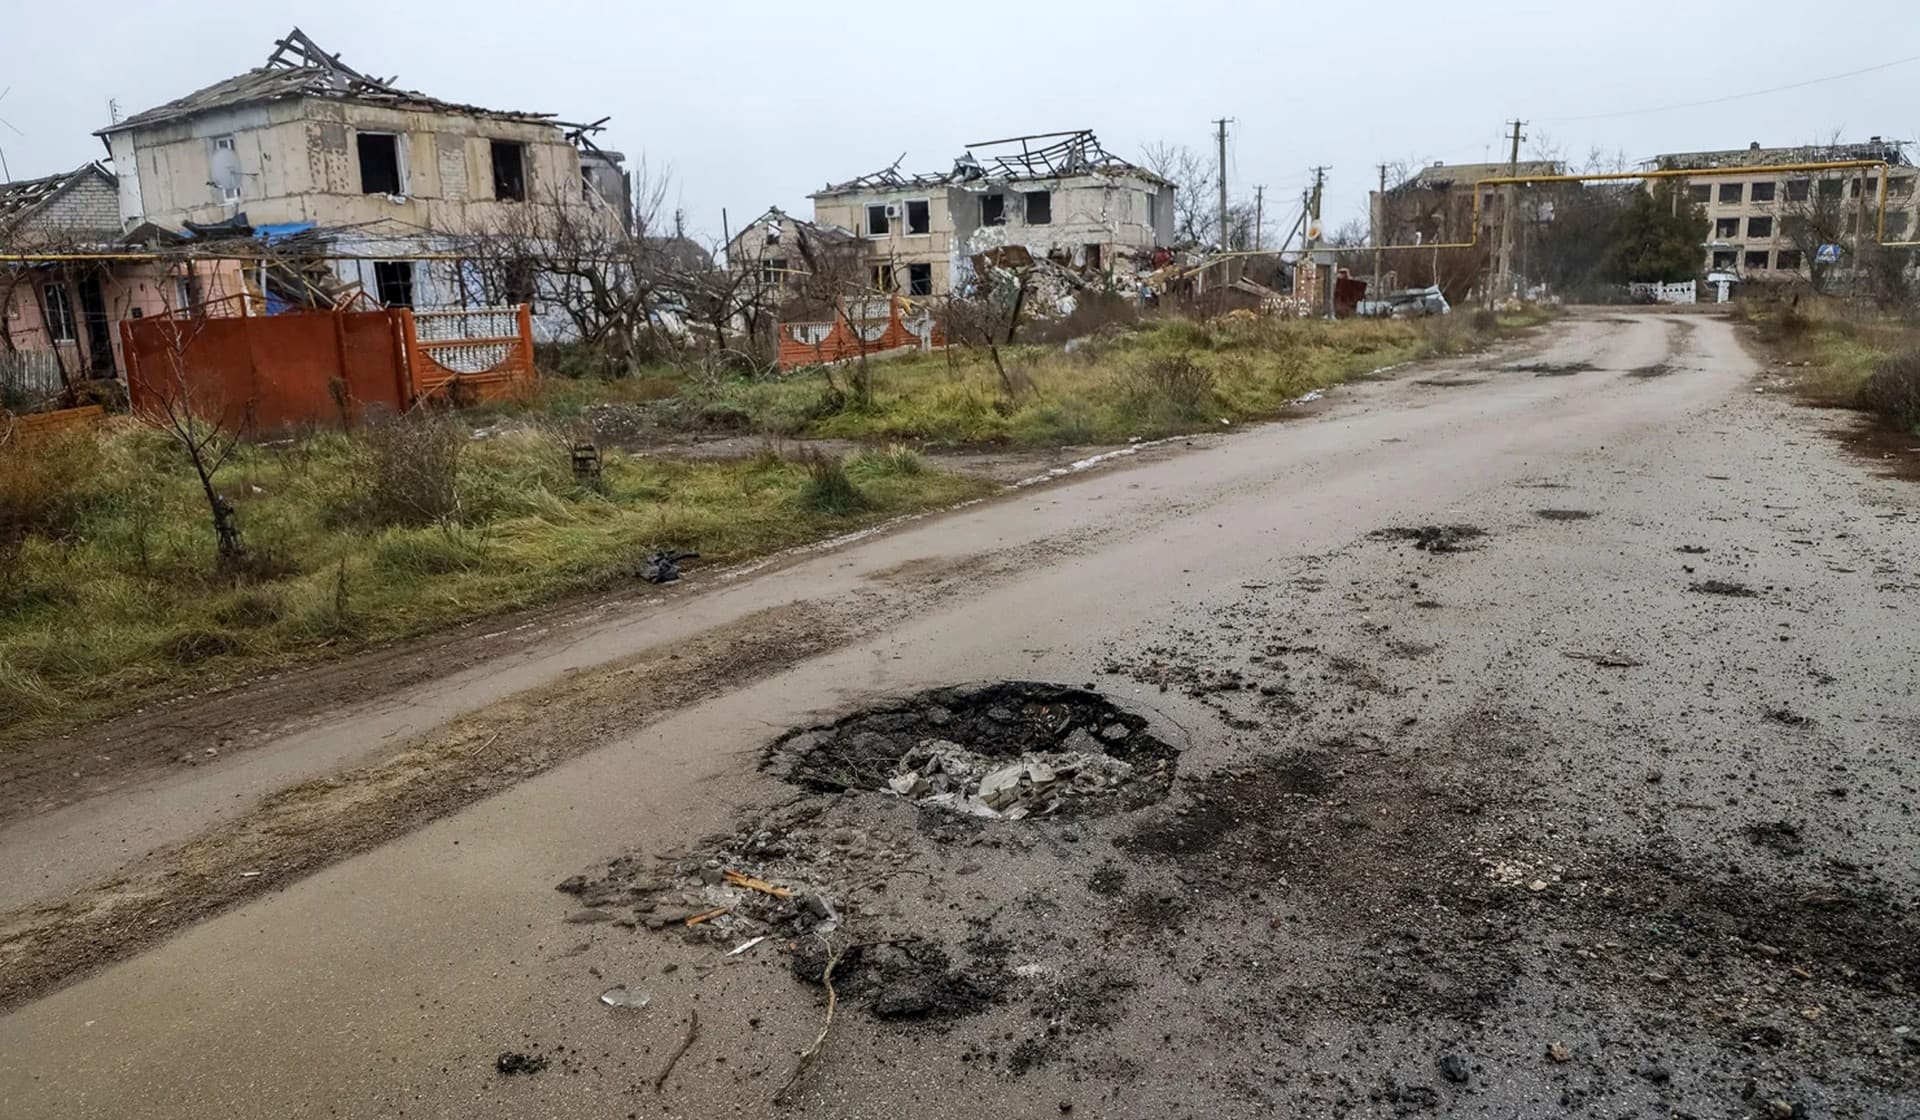 Destroyed buildings in the village of Posad-Pokrovske